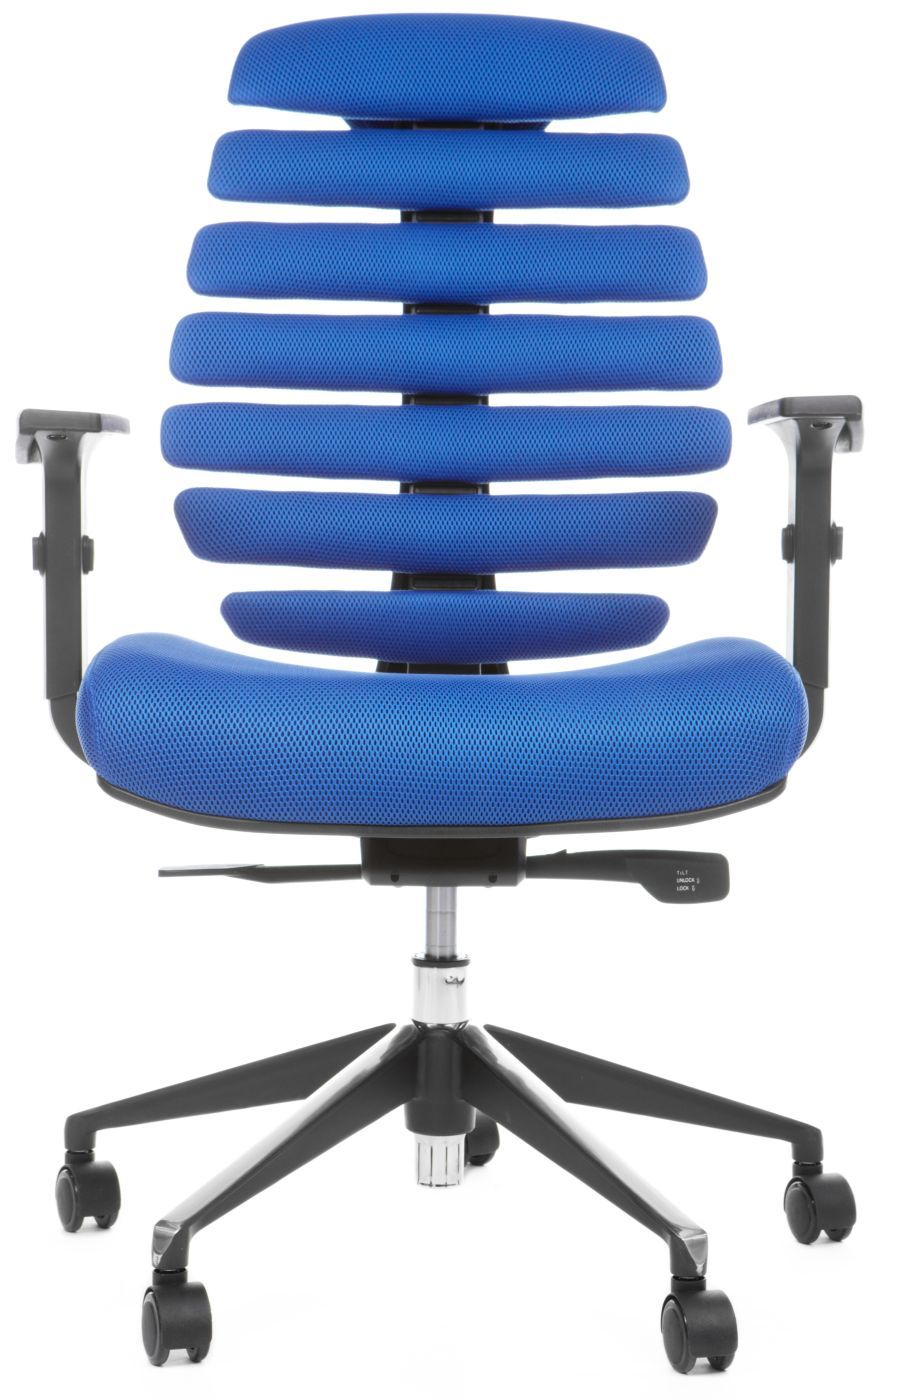 MERCURY kancelárska stolička FISH BONES čierny plast, modrá látka TW10